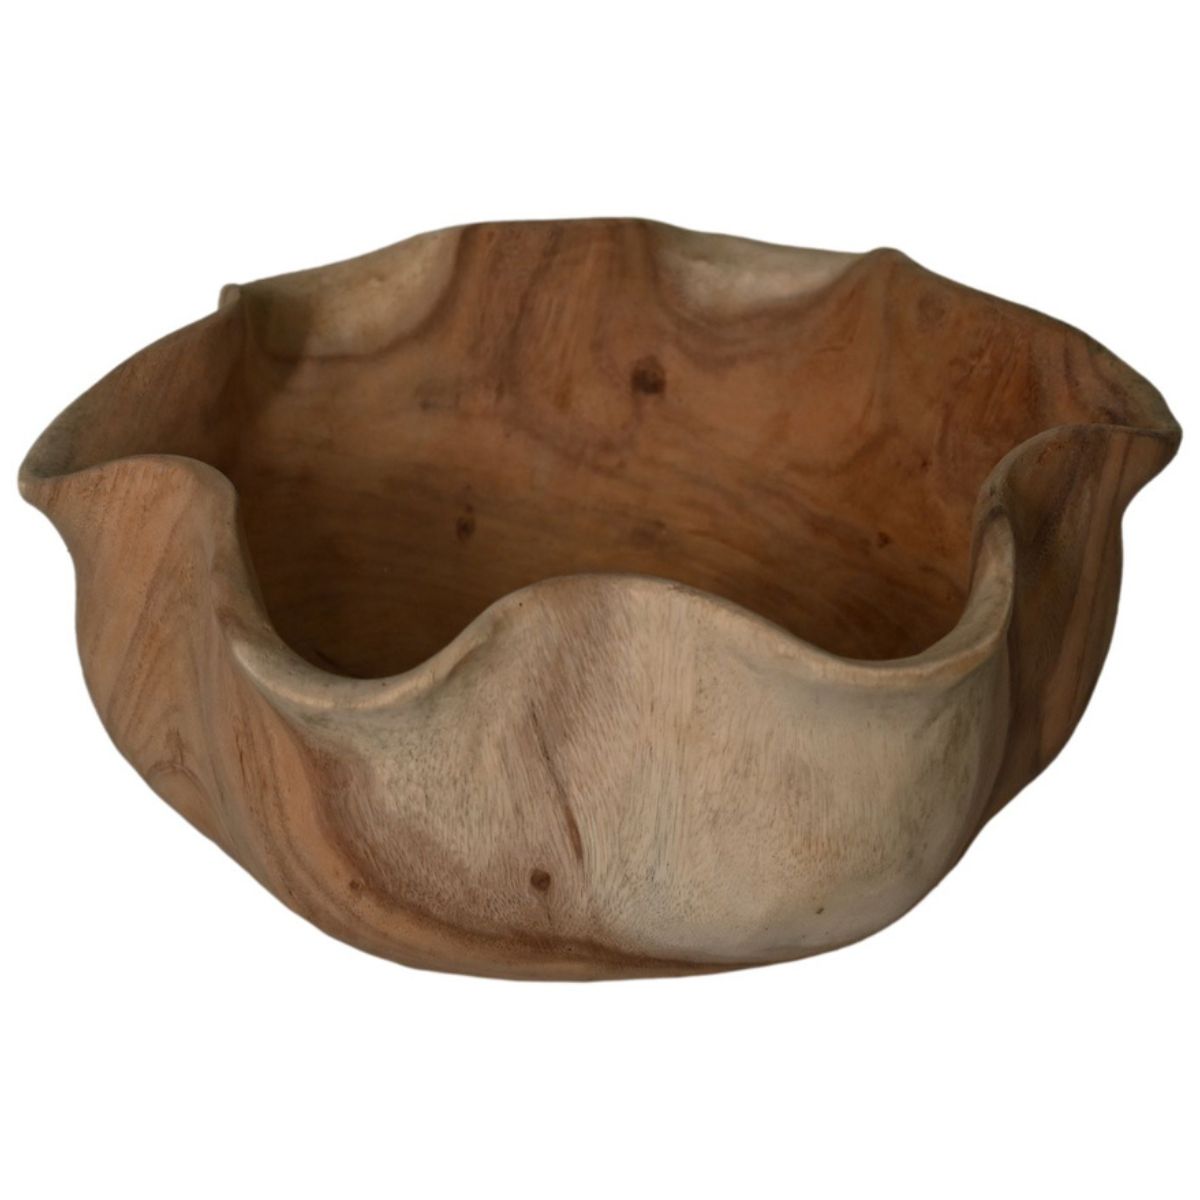 Ronde schaal van munggur hout met unieke natuurlijke details - perfecte toevoeging aan je interieur.